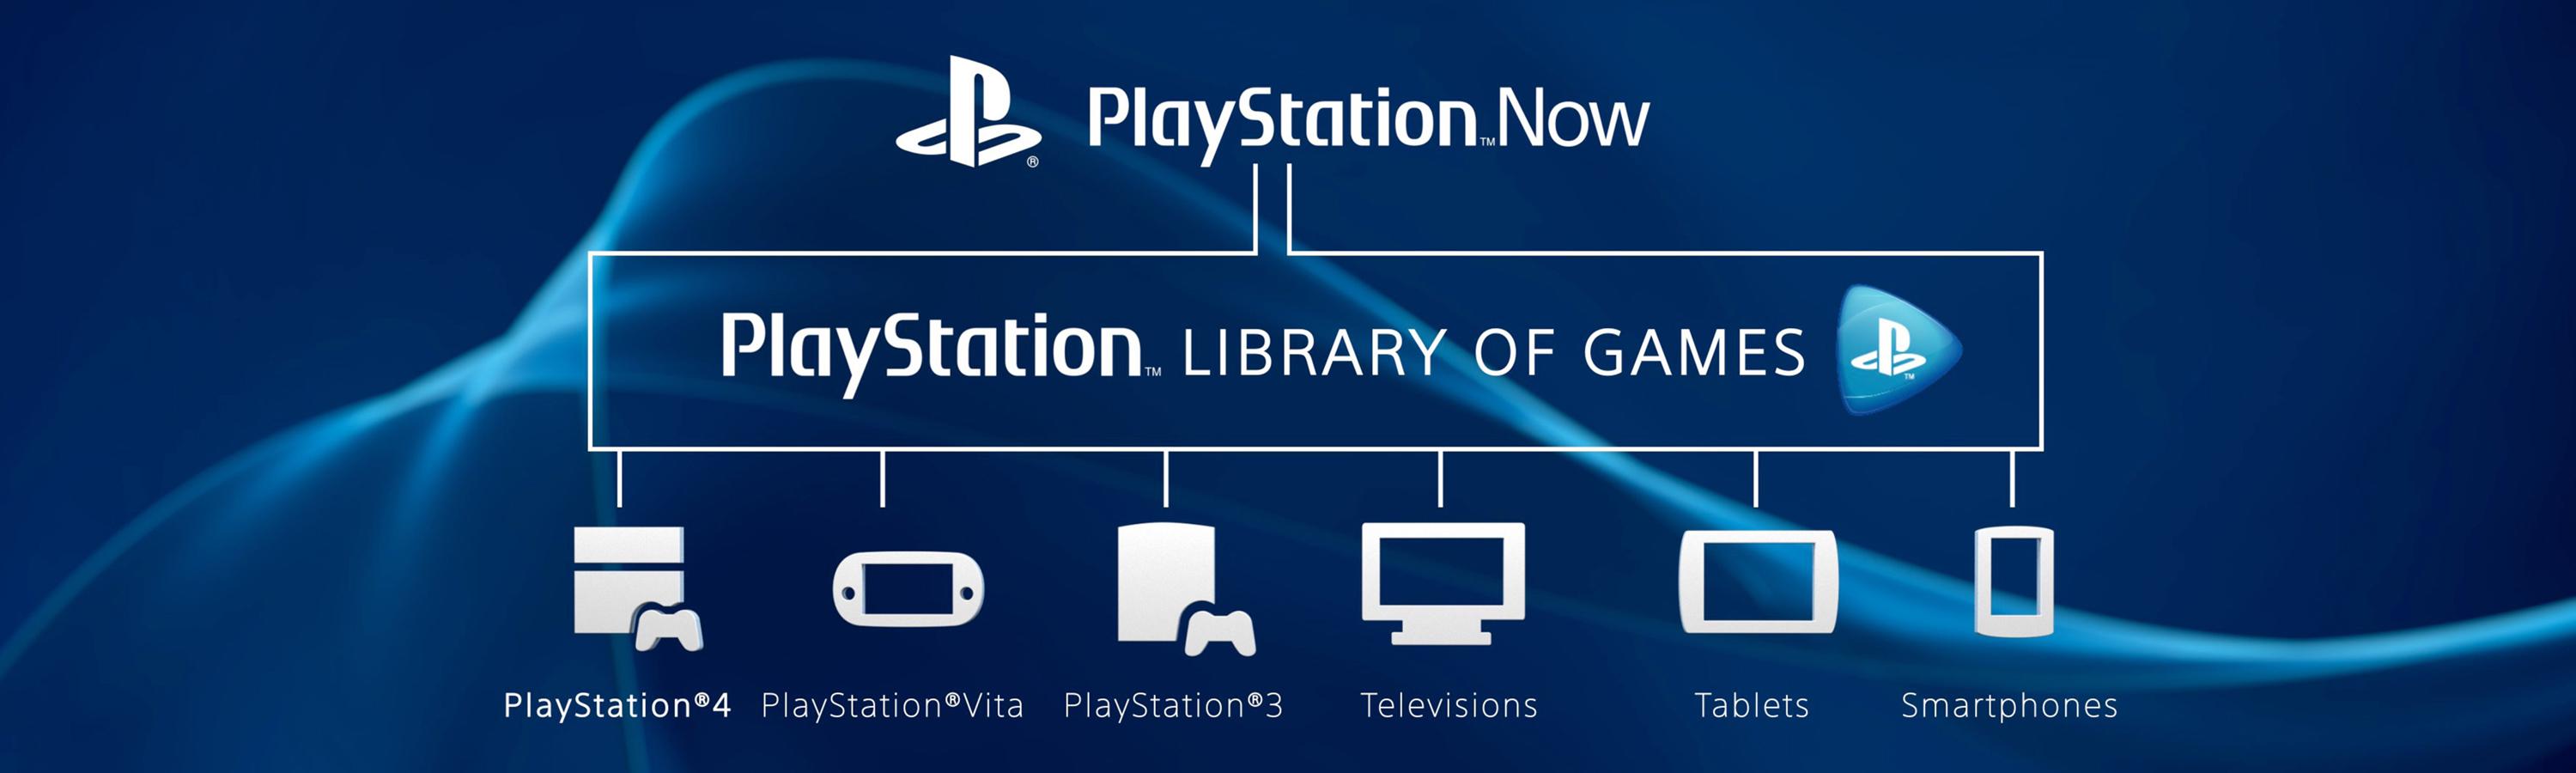 Sony Presenta Playstation Now La Plataforma De Juegos En Streaming